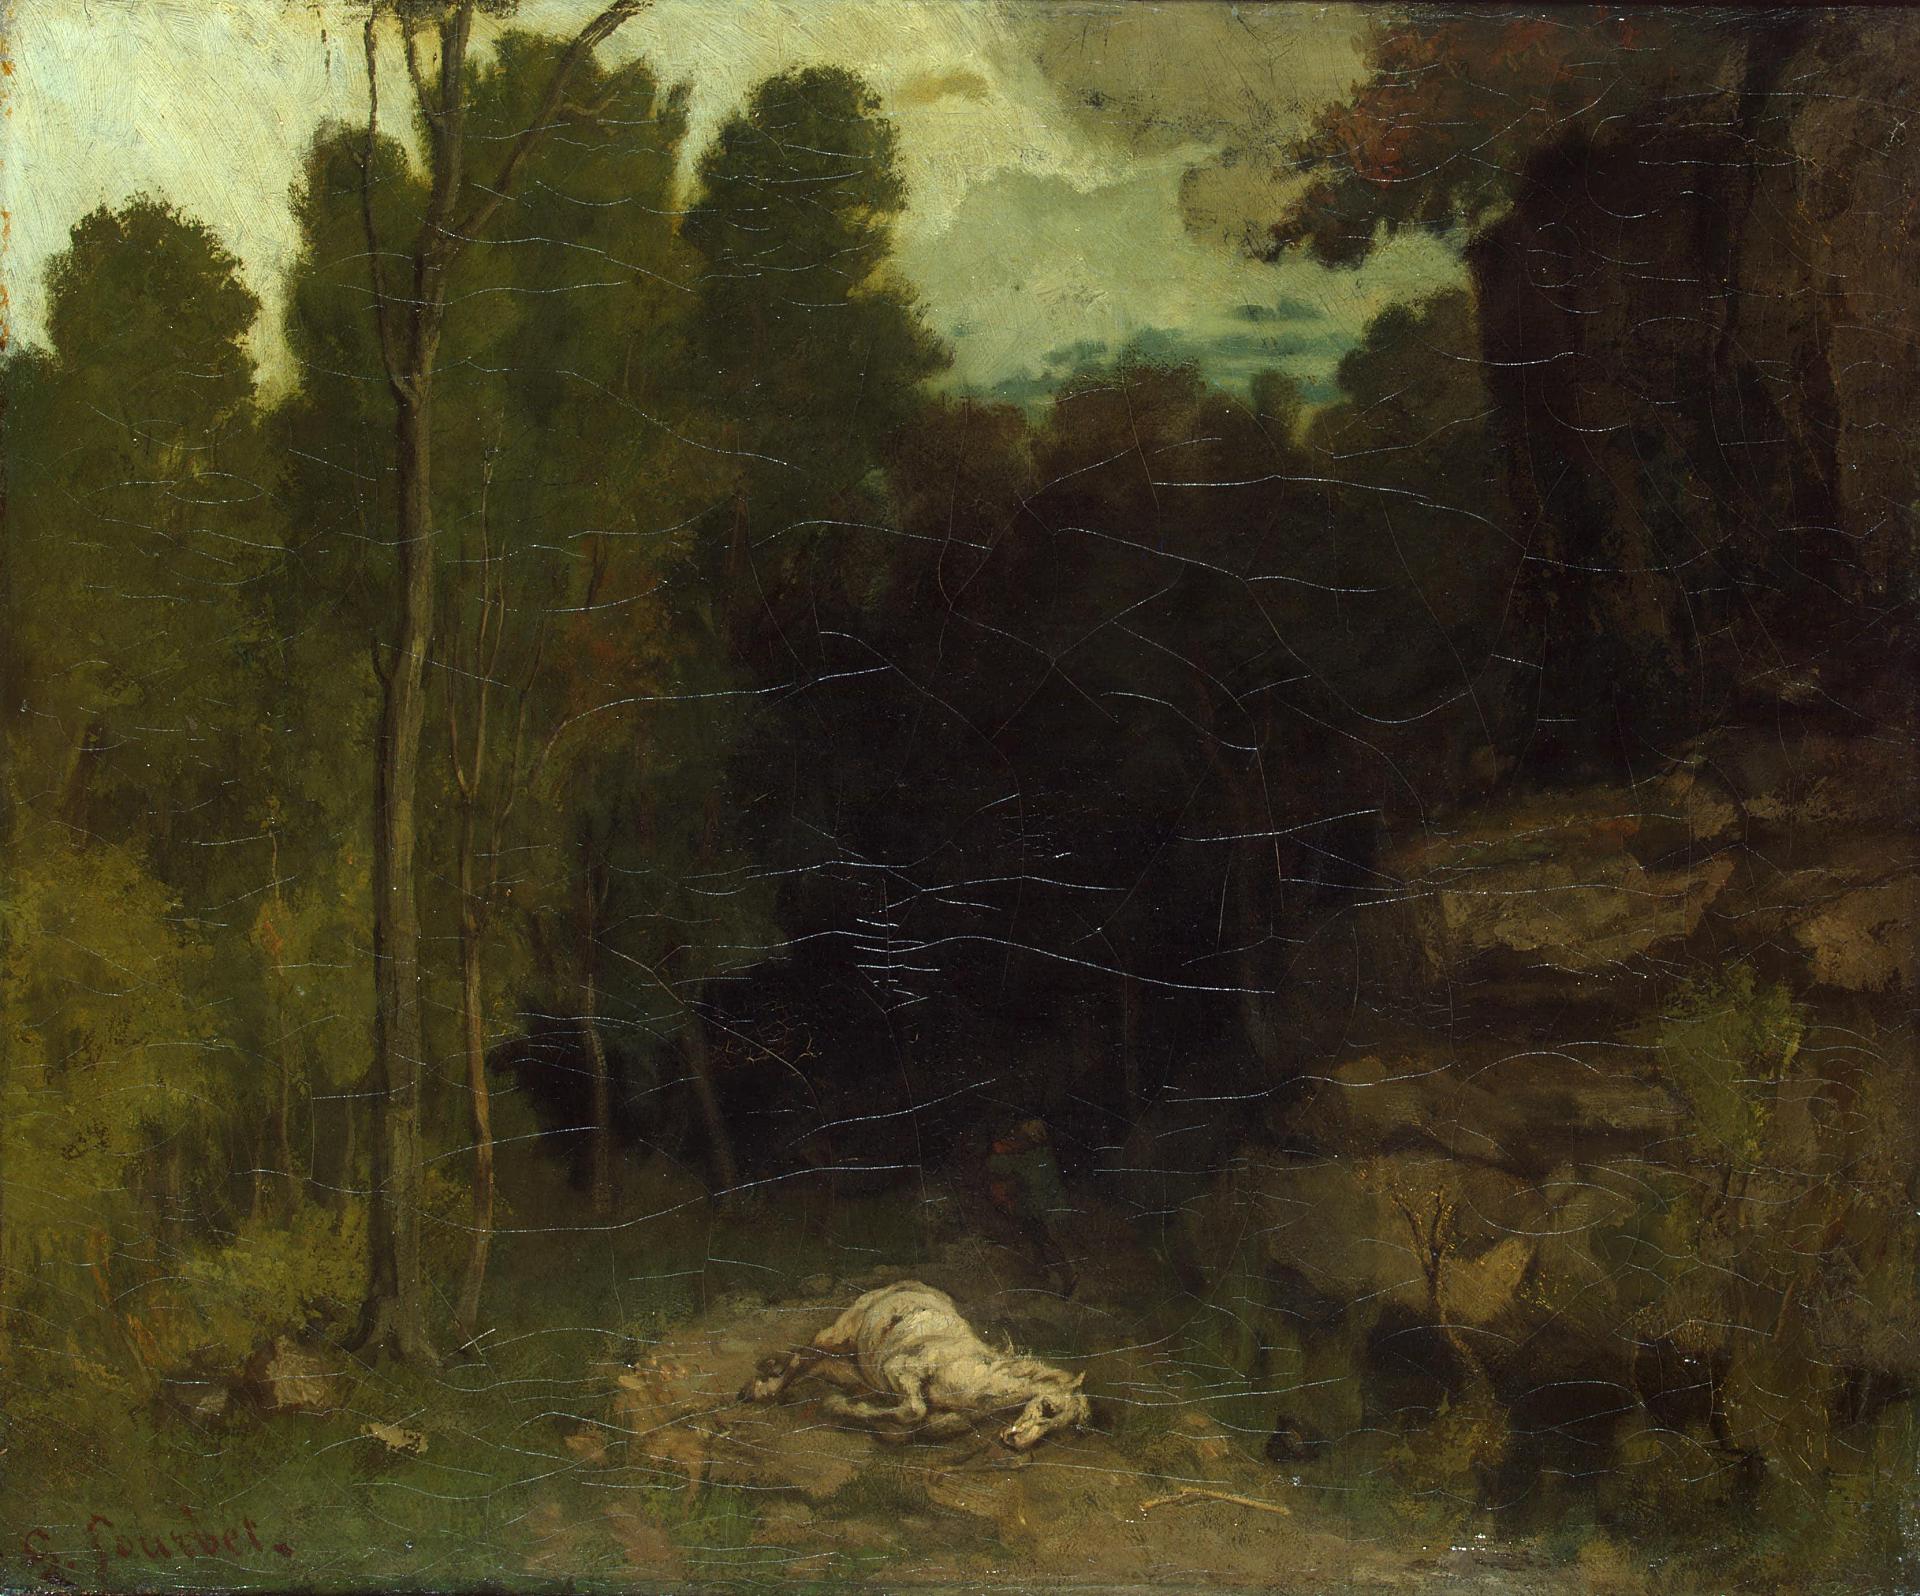 Гюстав Курбе. "Пейзаж с мёртвой лошадью". Вторая половина 1850-х. Эрмитаж, Санкт-Петербург.